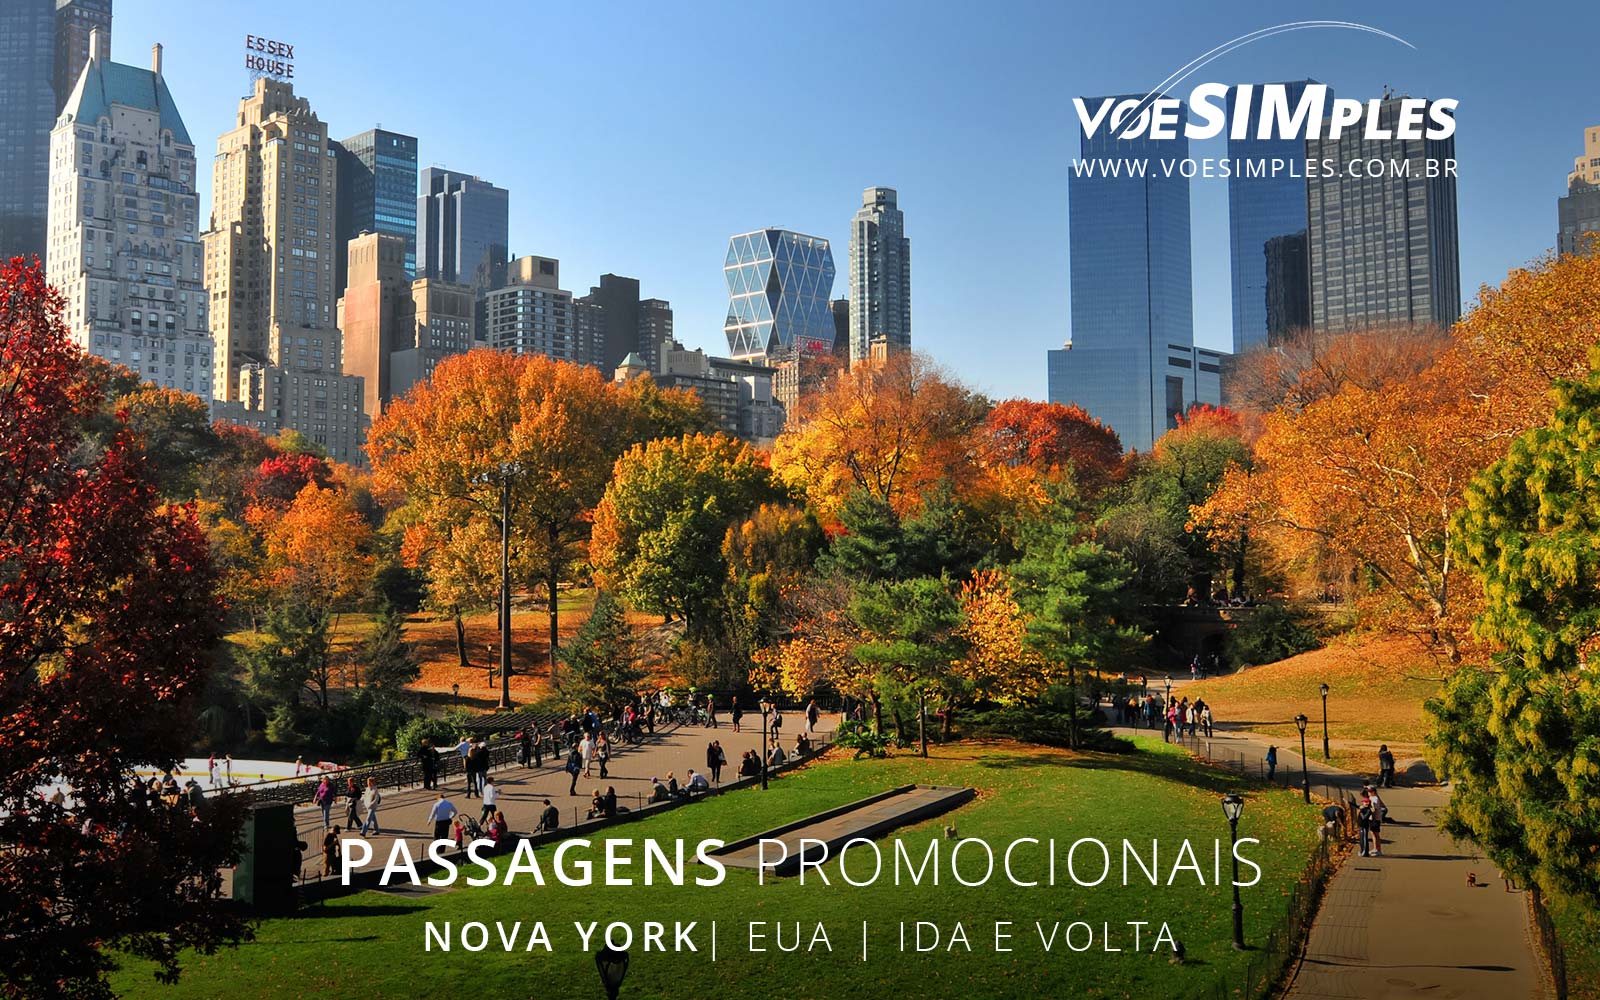 passagens-aereas-baratas-nova-york-usa-eua-voe-simples-passages-aereas-promocionais-usa-passagens-promo-nova-york